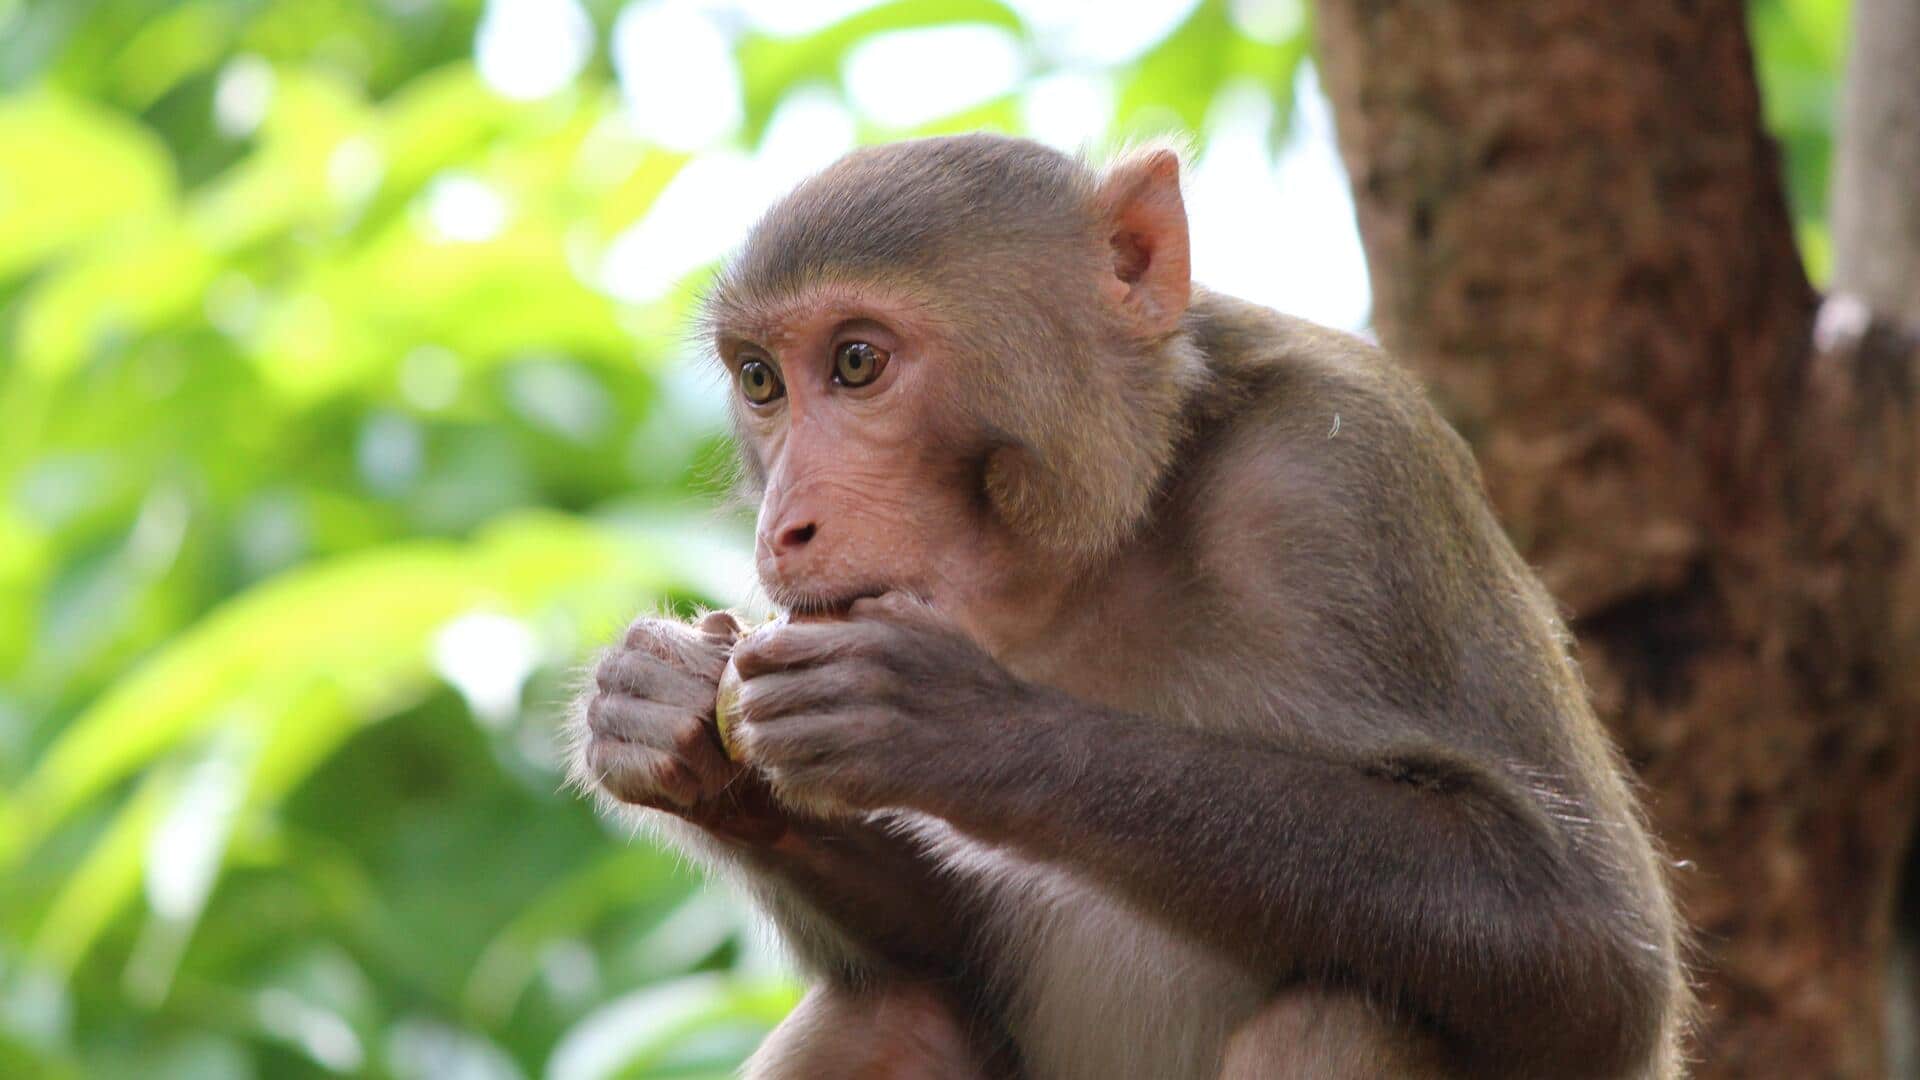 उत्तर प्रदेश में 'मंकी हाइस्ट': रामपुर में बंदरों ने चोरी किए 1.5 लाख रुपये 